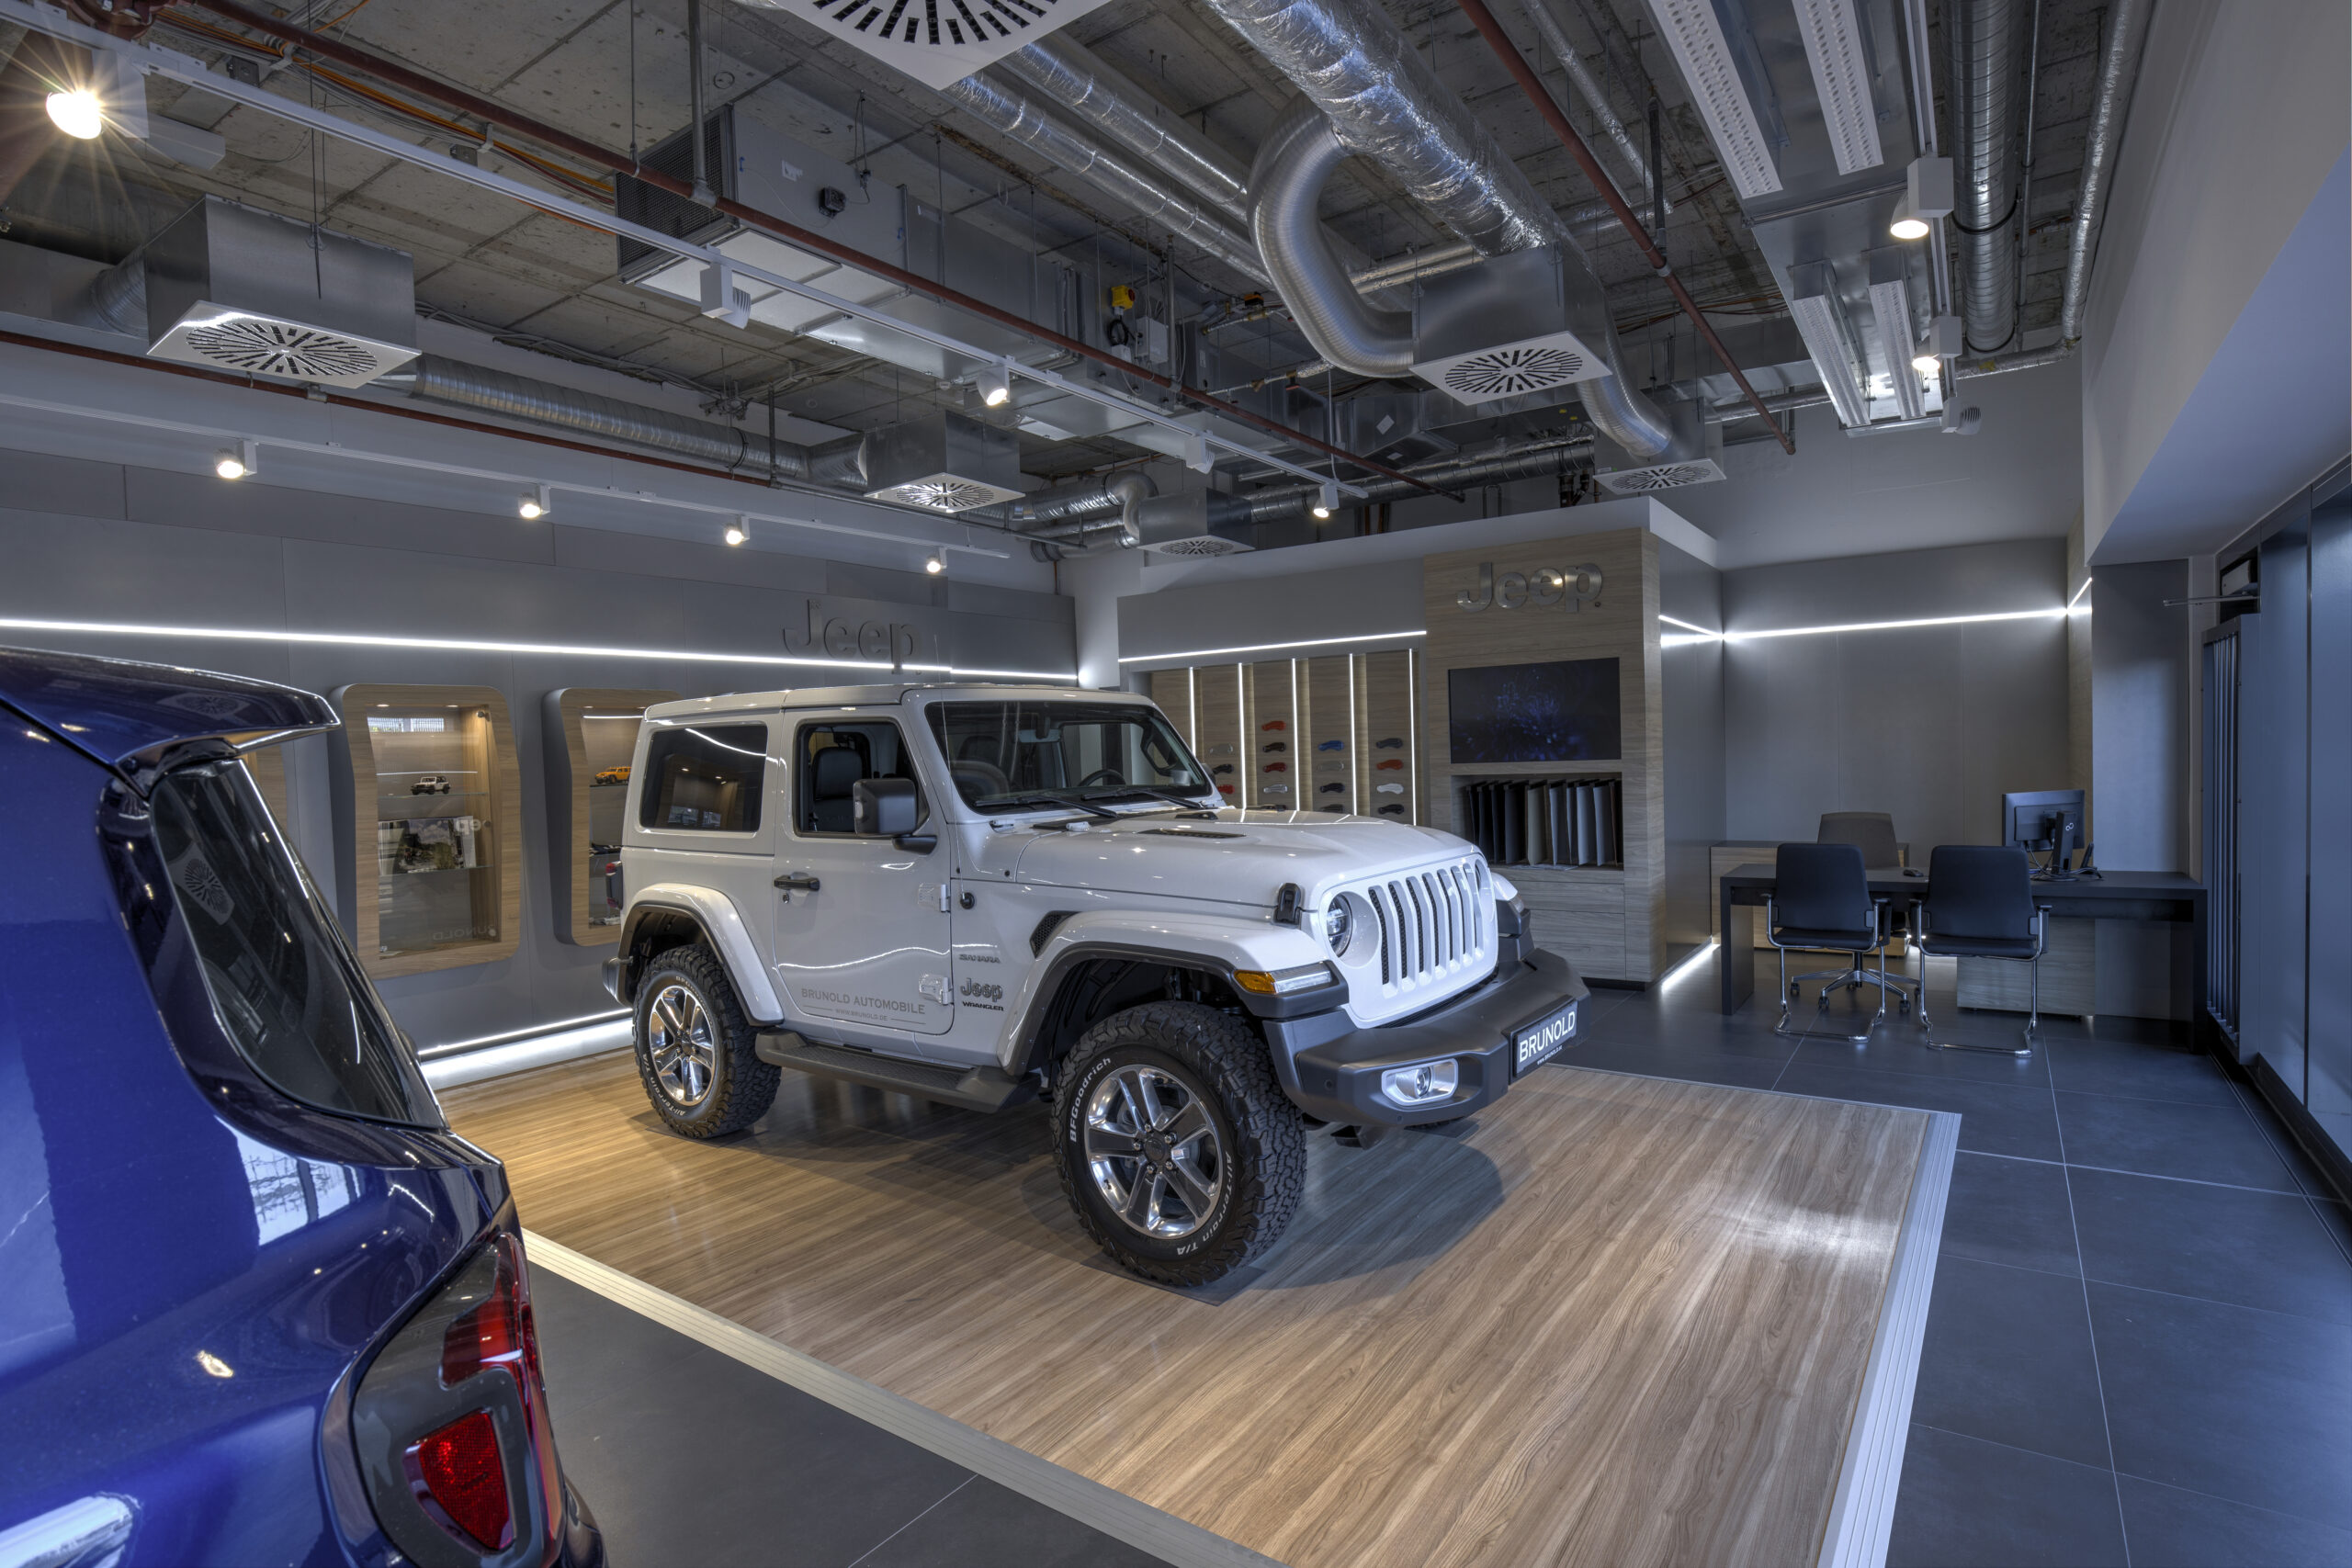 Jeep eröffnet Shop im Breuningerland Sindelfingen